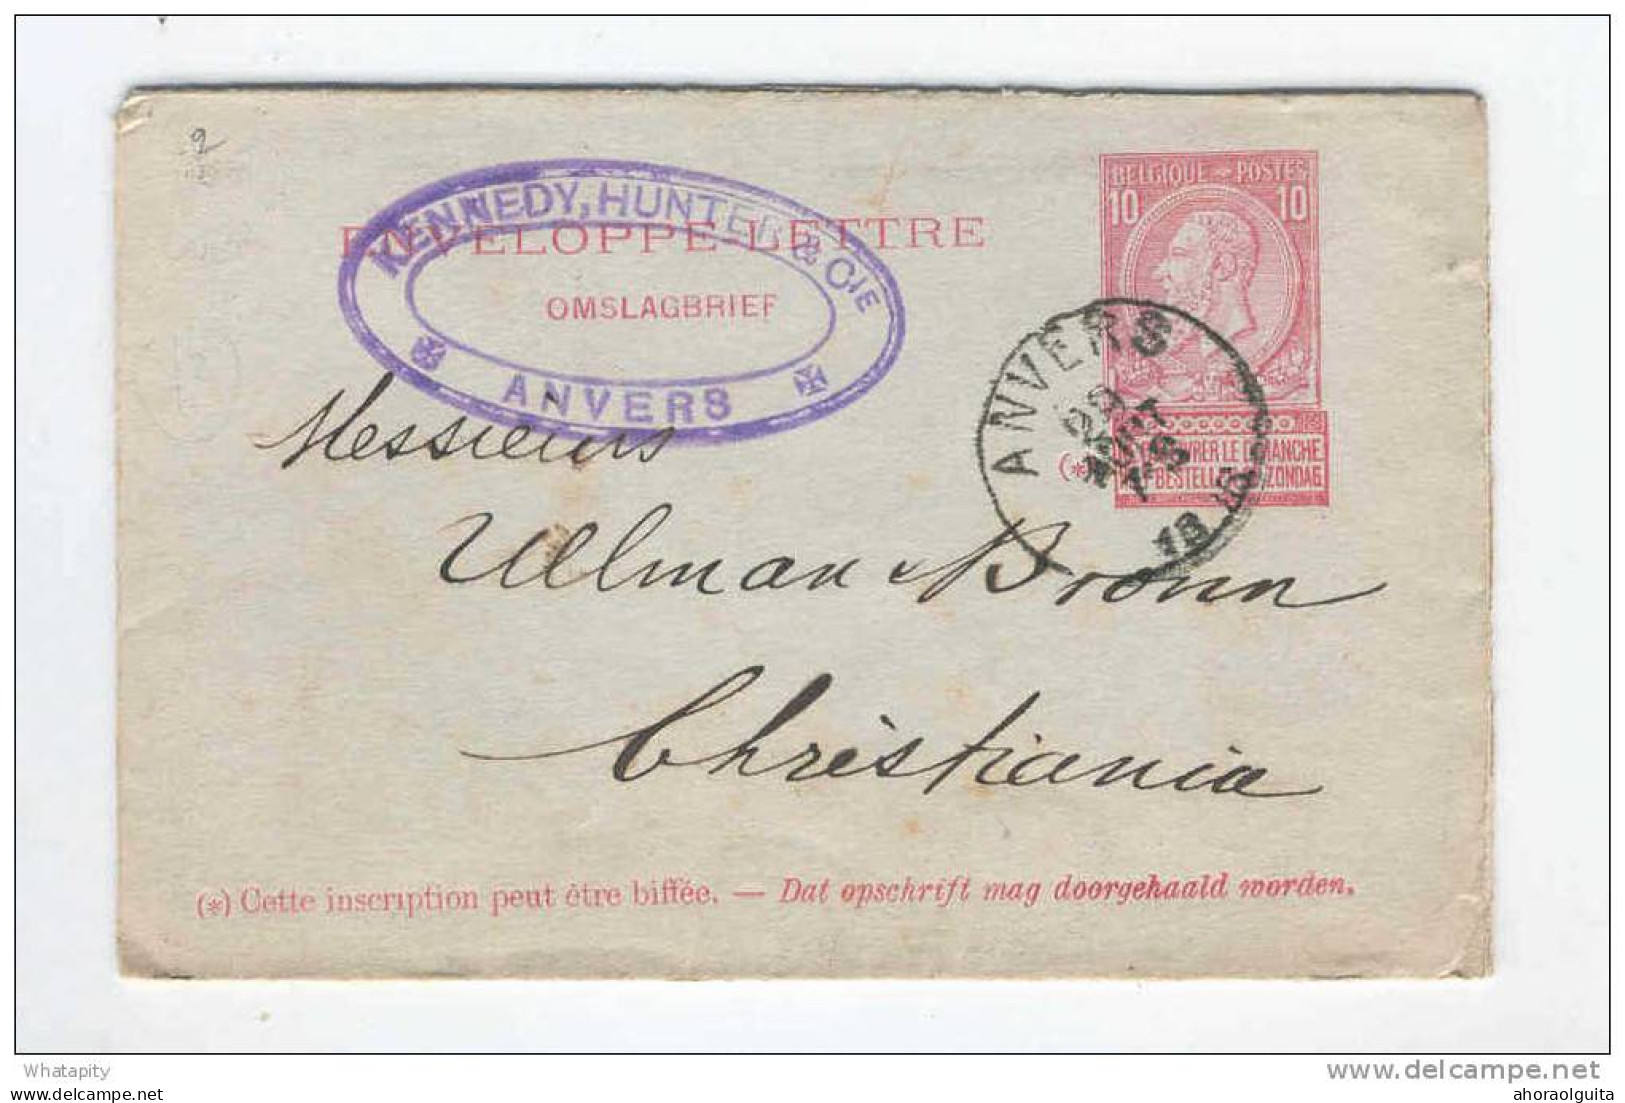 Enveloppe-Lettre Type No 46 + TP 56 Et 57 ANVERS 1896 Vers CHRISTIANIA Norvège  --  14/790 - Sobres-cartas